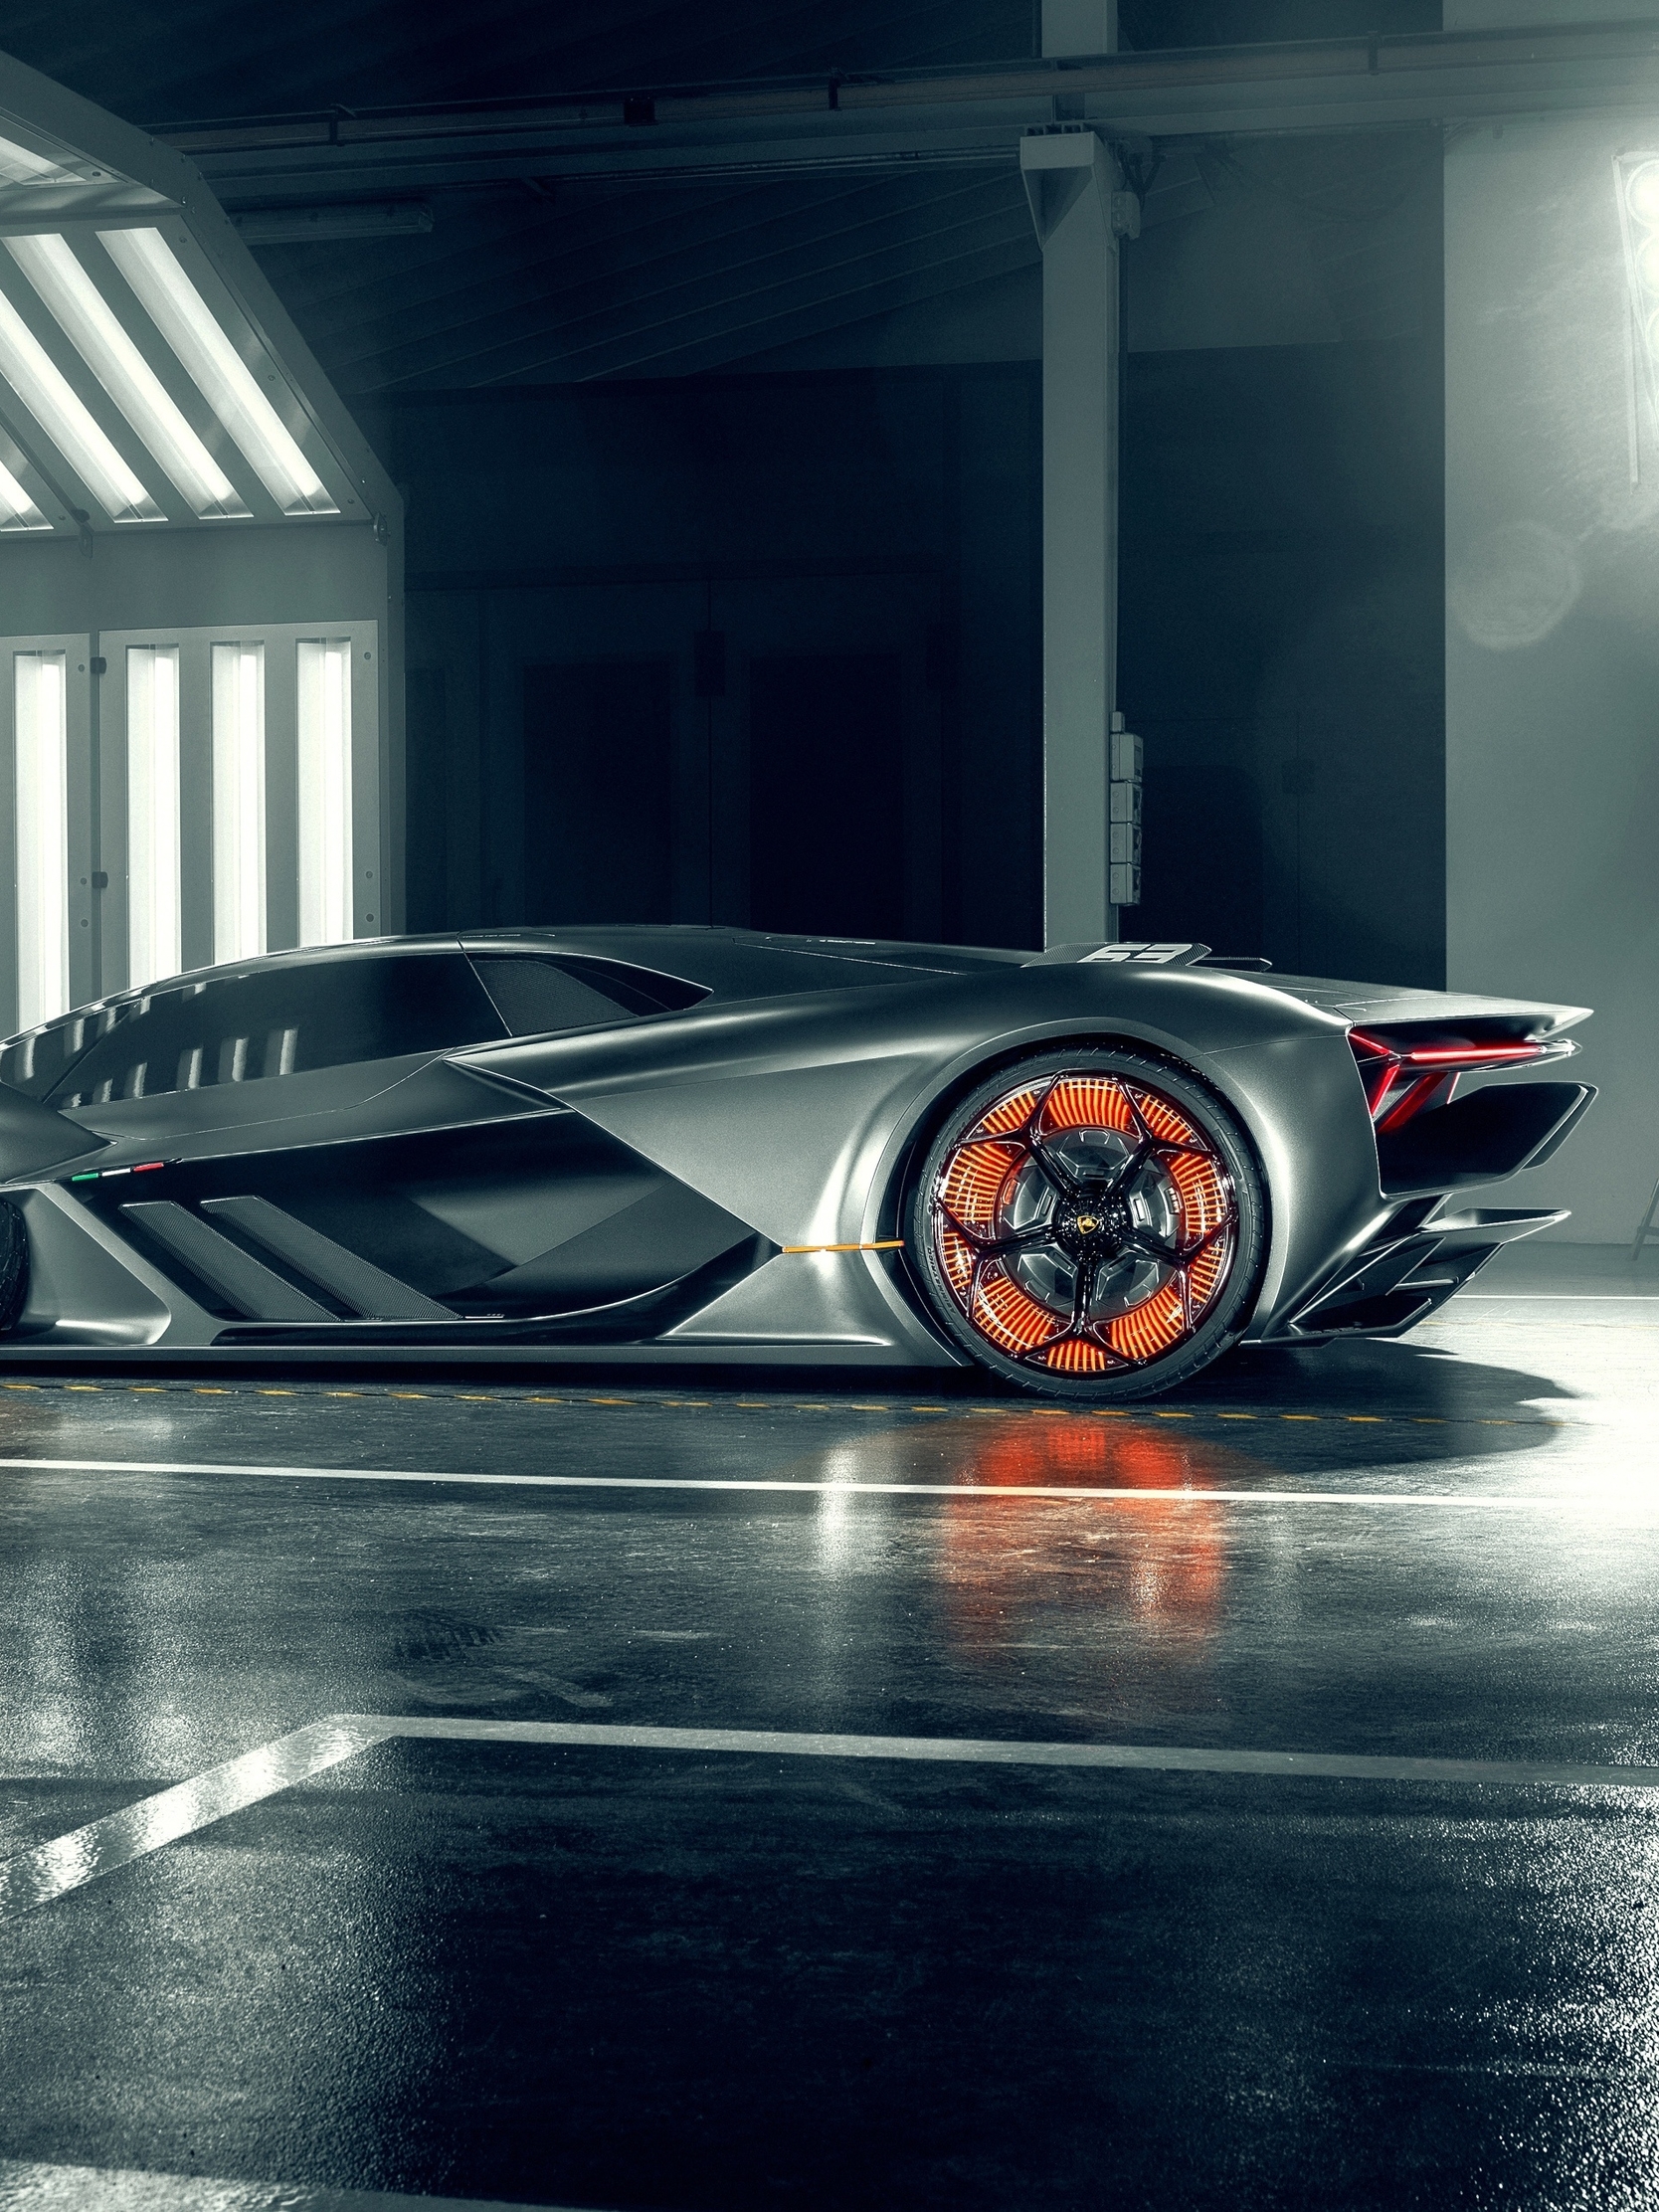 Image: Lamborghini, Terzo, racing, sports car, Italy, light